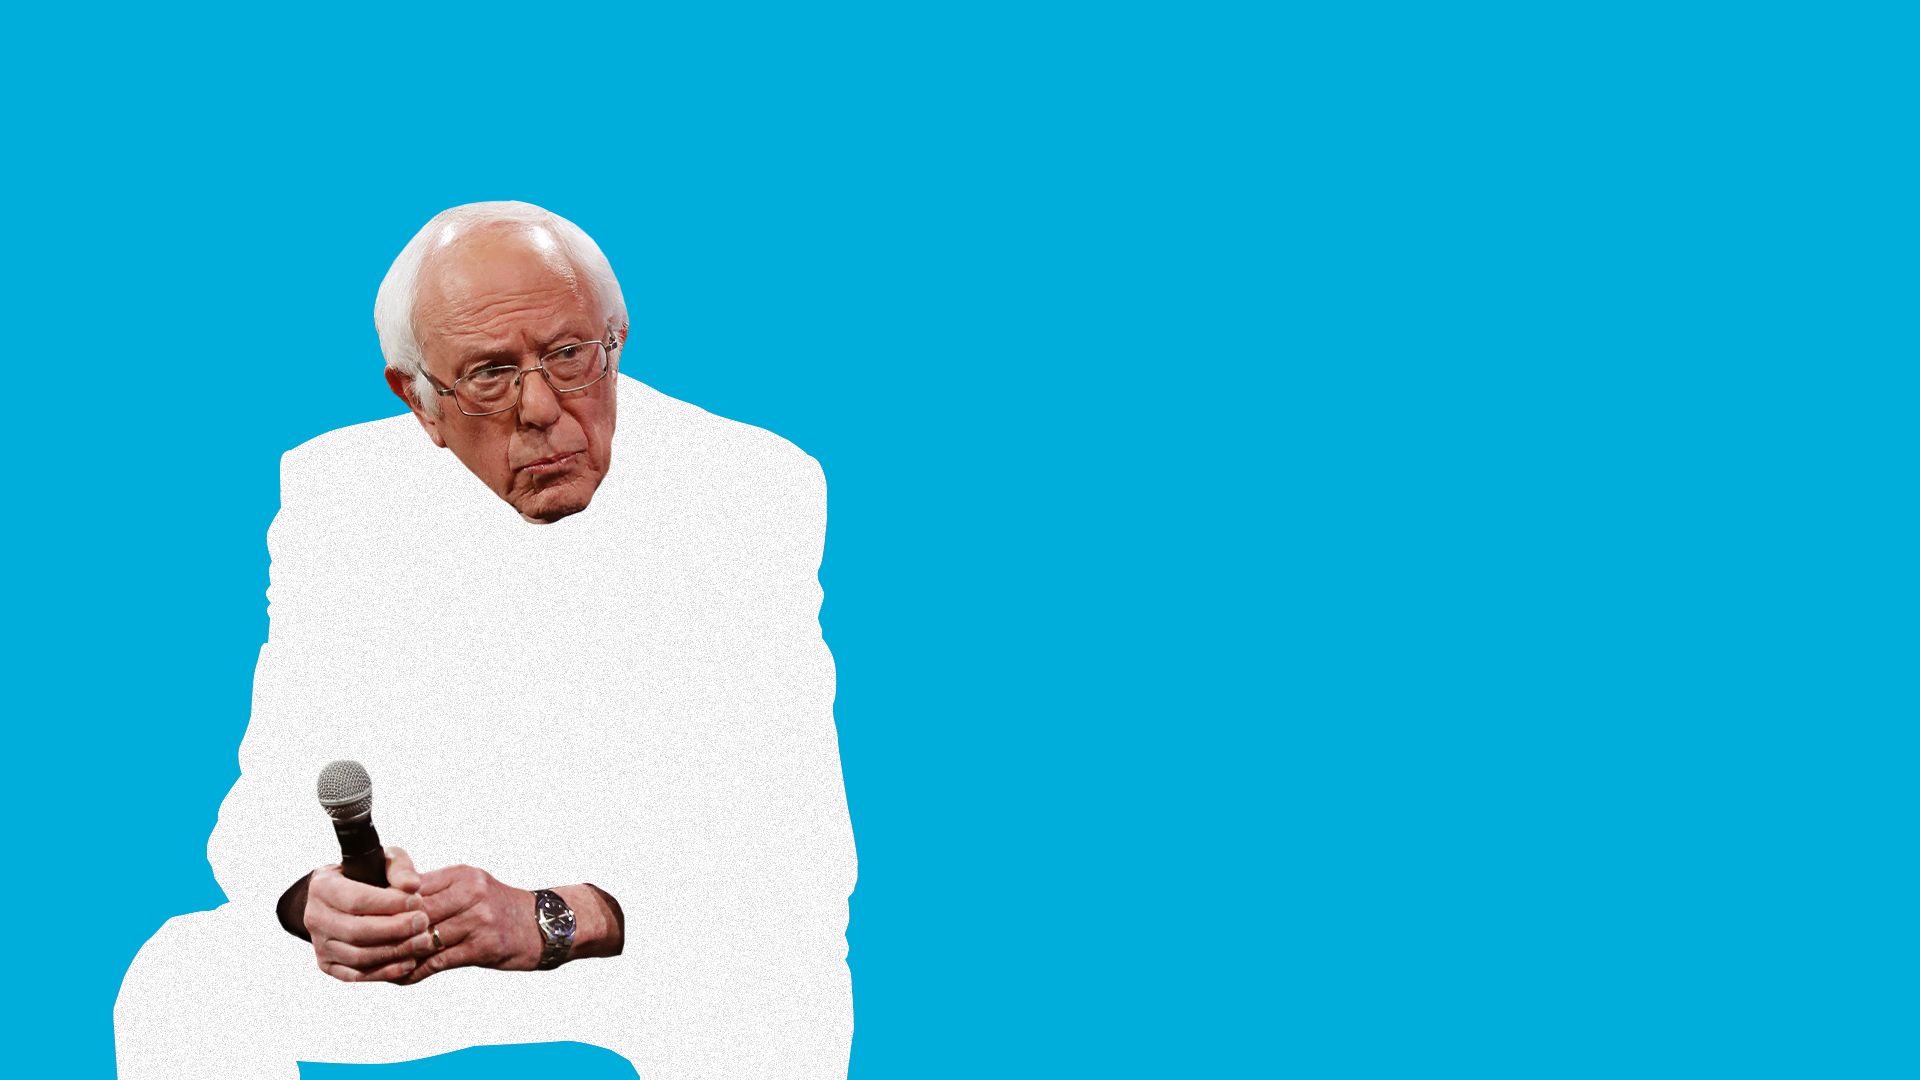 Photo illustration of Bernie Sanders